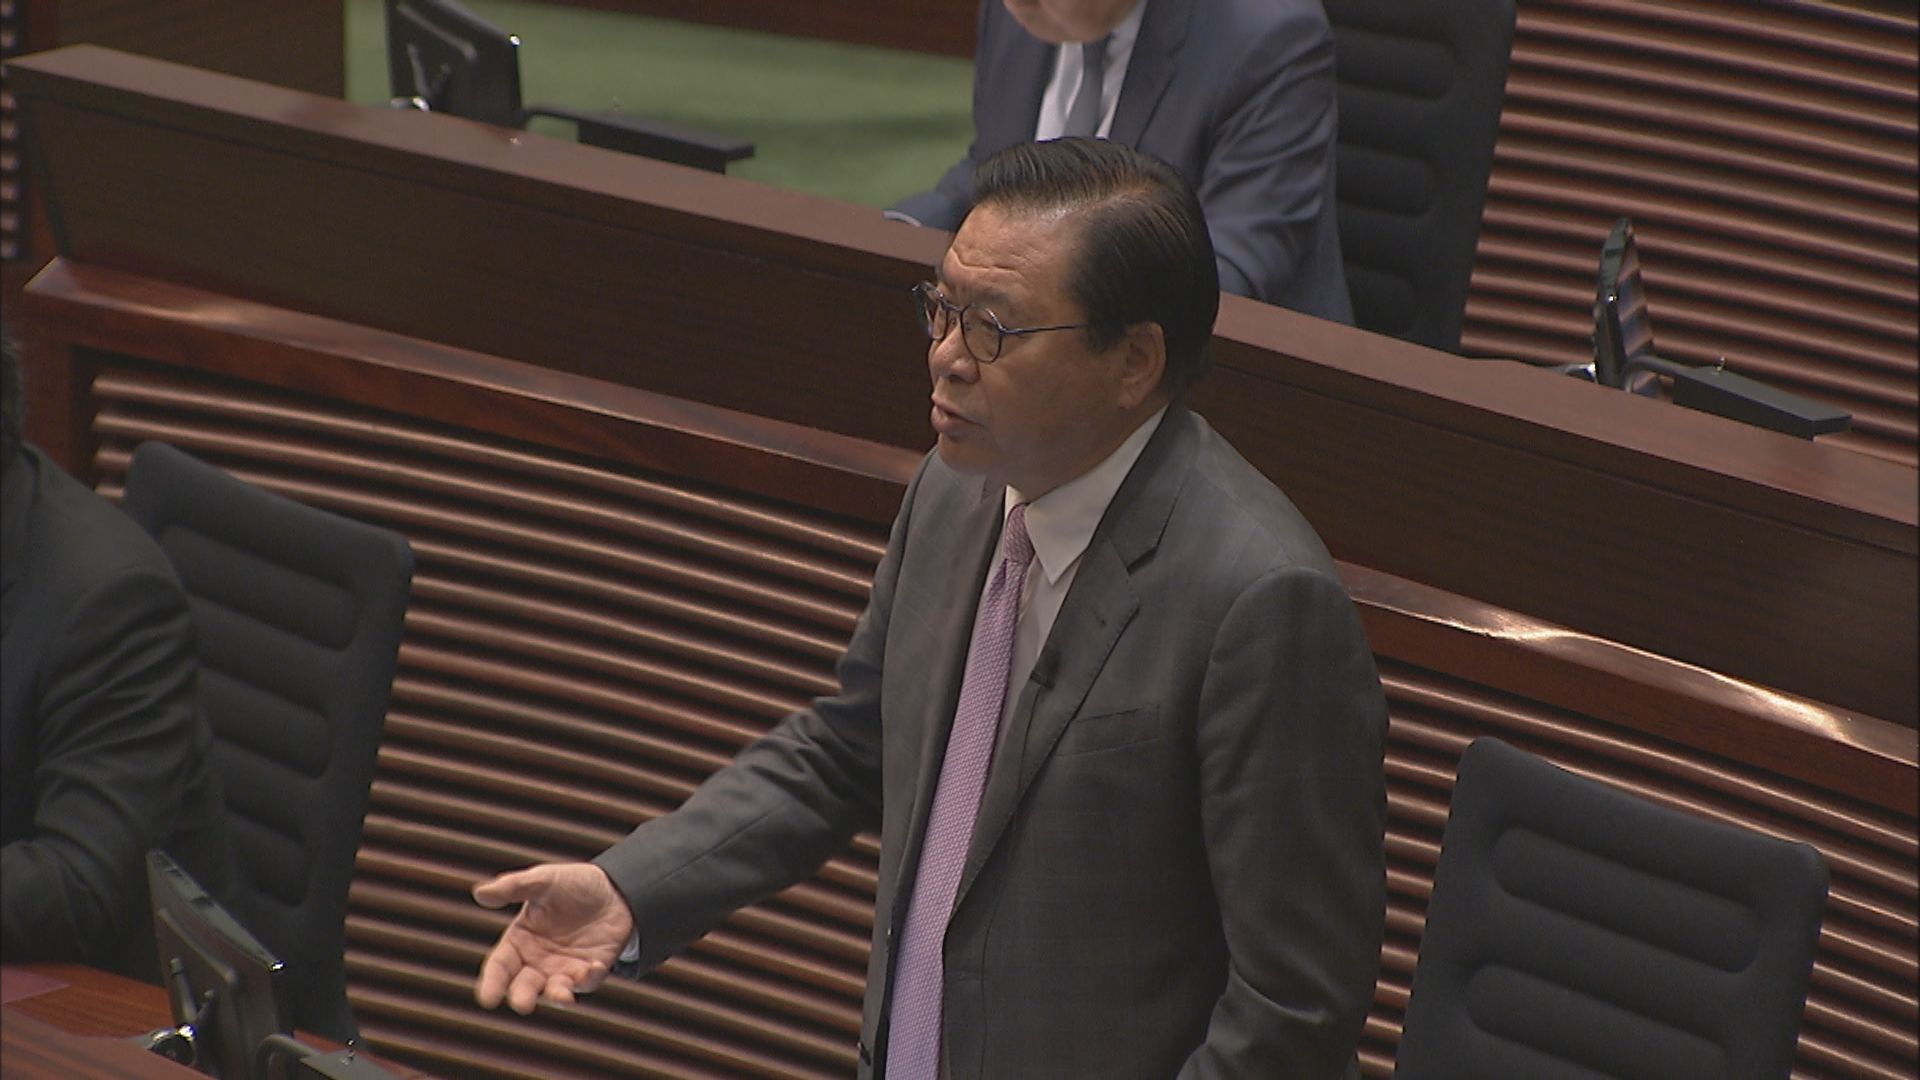 有議員認為香港國際機場收費較貴 政府指不能直接比較